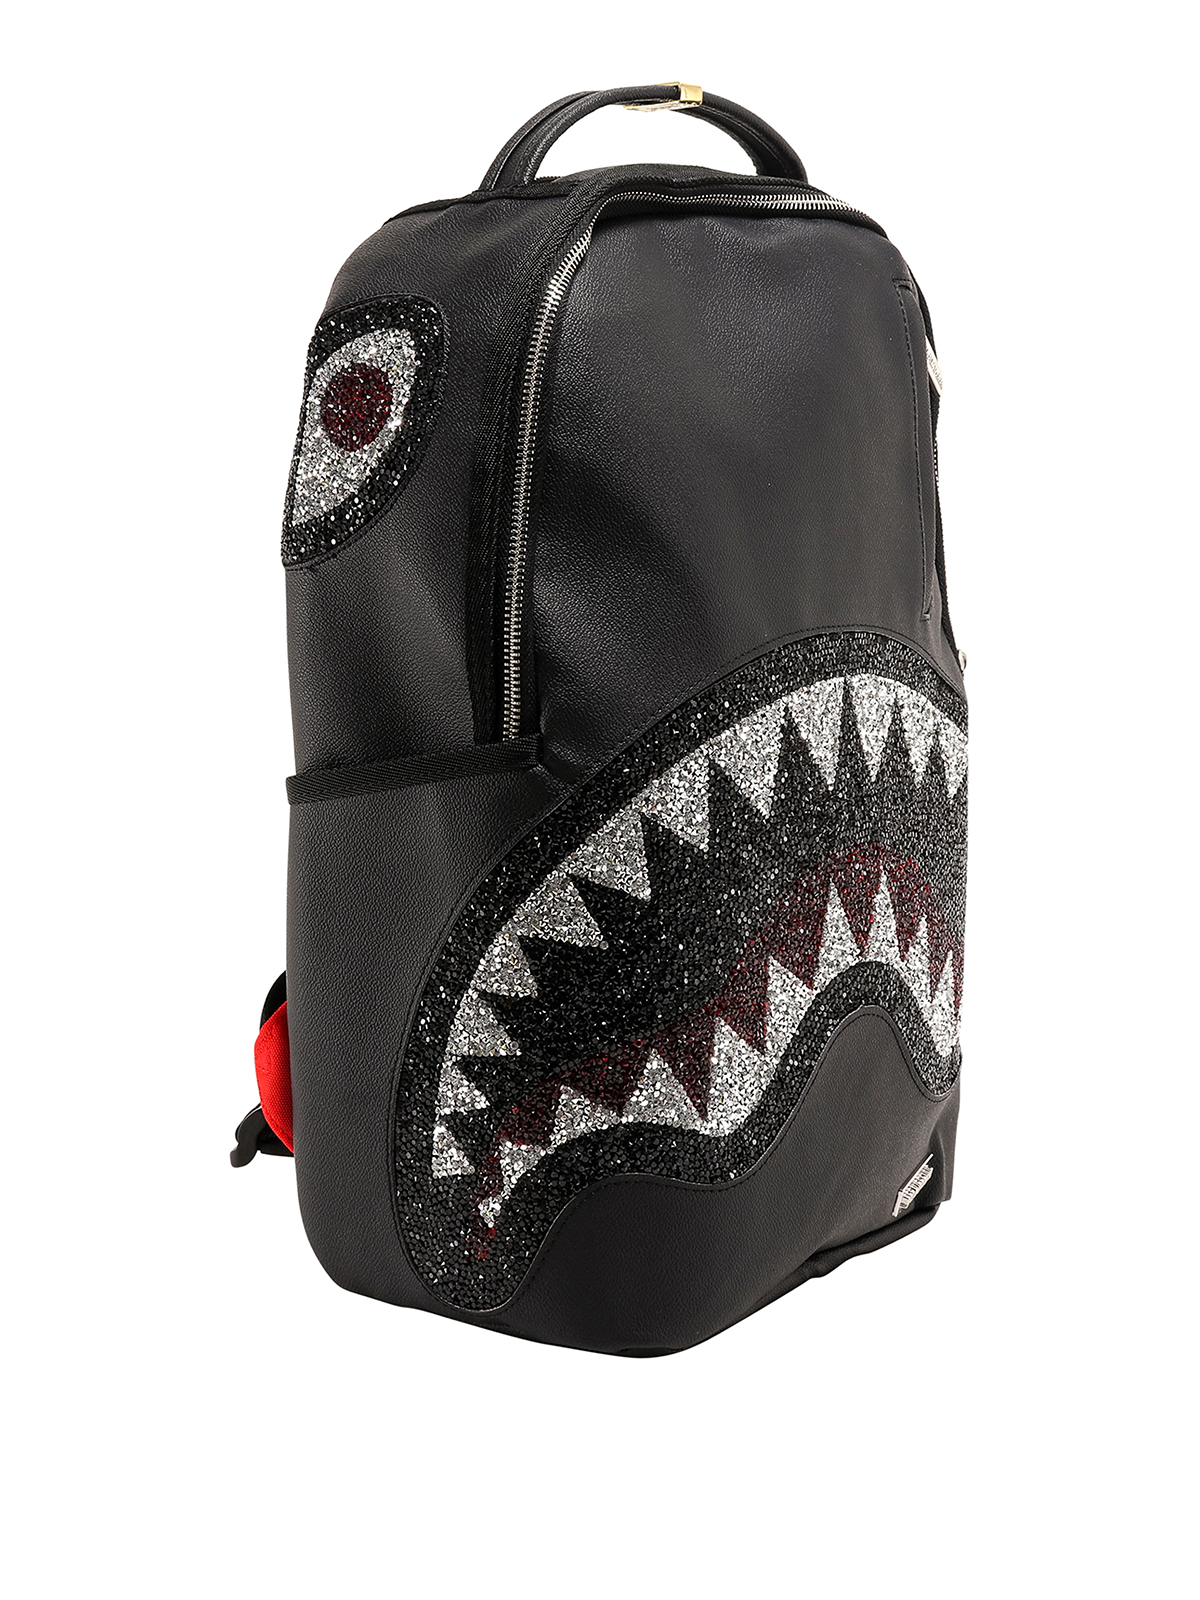 Sprayground Trinity 2.0 Shark Backpack - White Backpacks, Handbags -  WSPGR20019